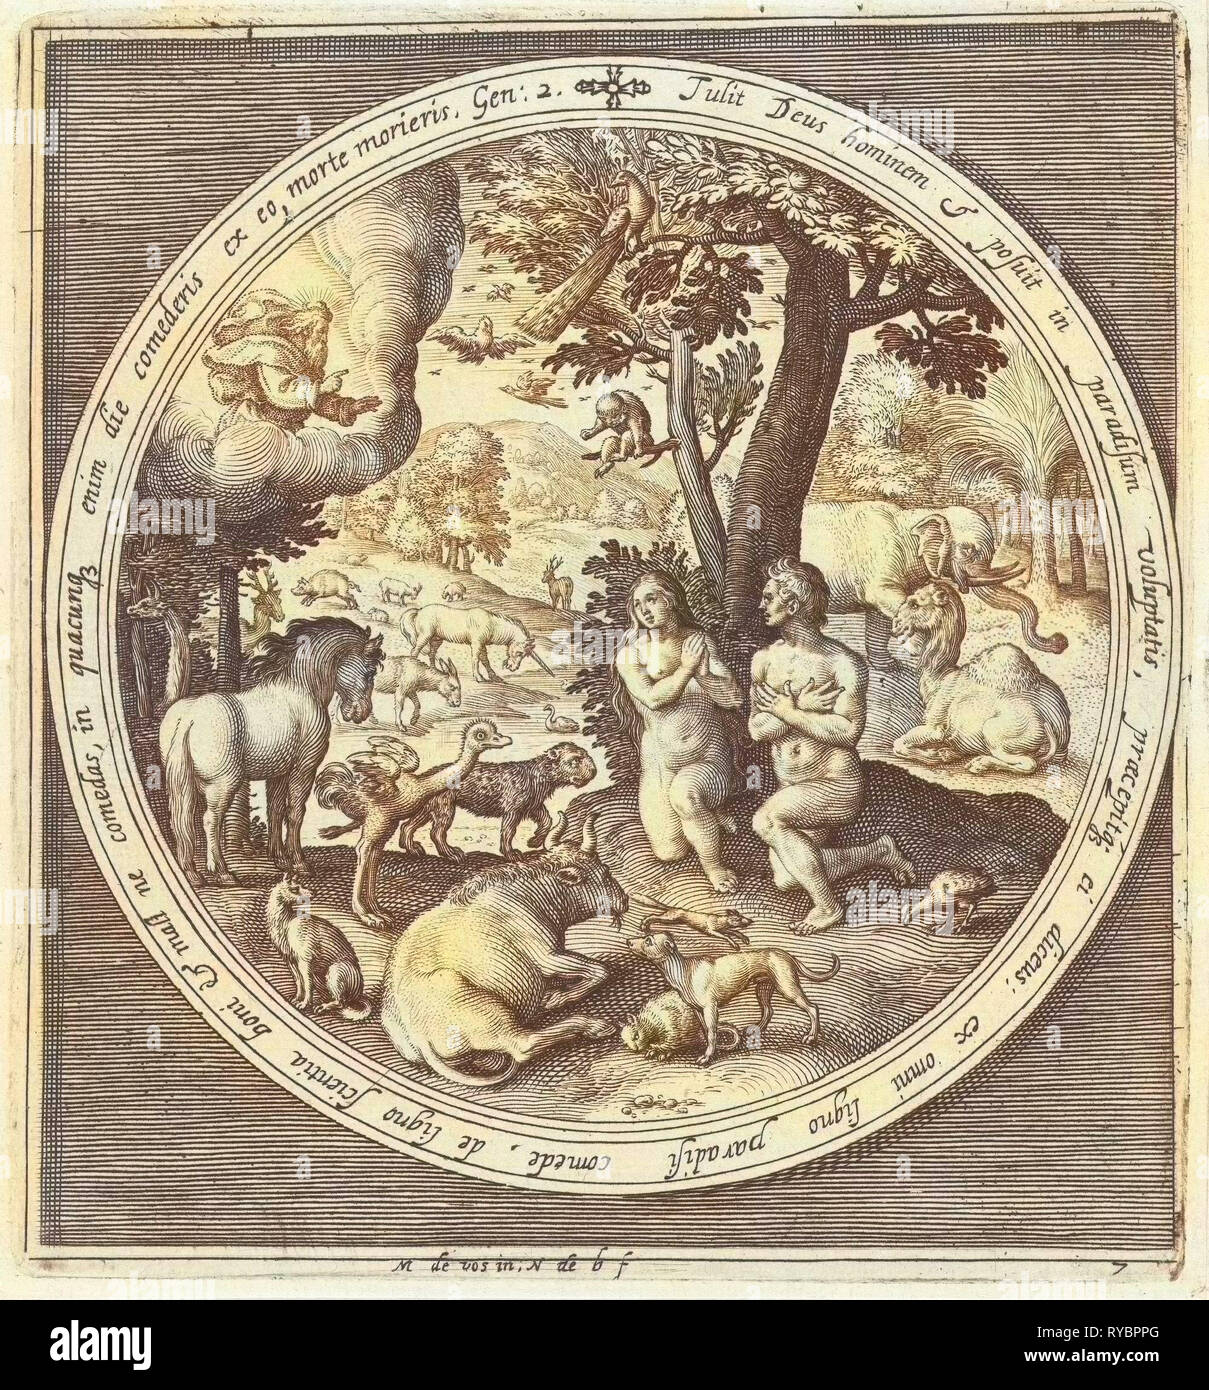 Le septième jour de la création, Adam et Eve au paradis, Nicolaes de Bruyn, 1581 - 1656 Banque D'Images